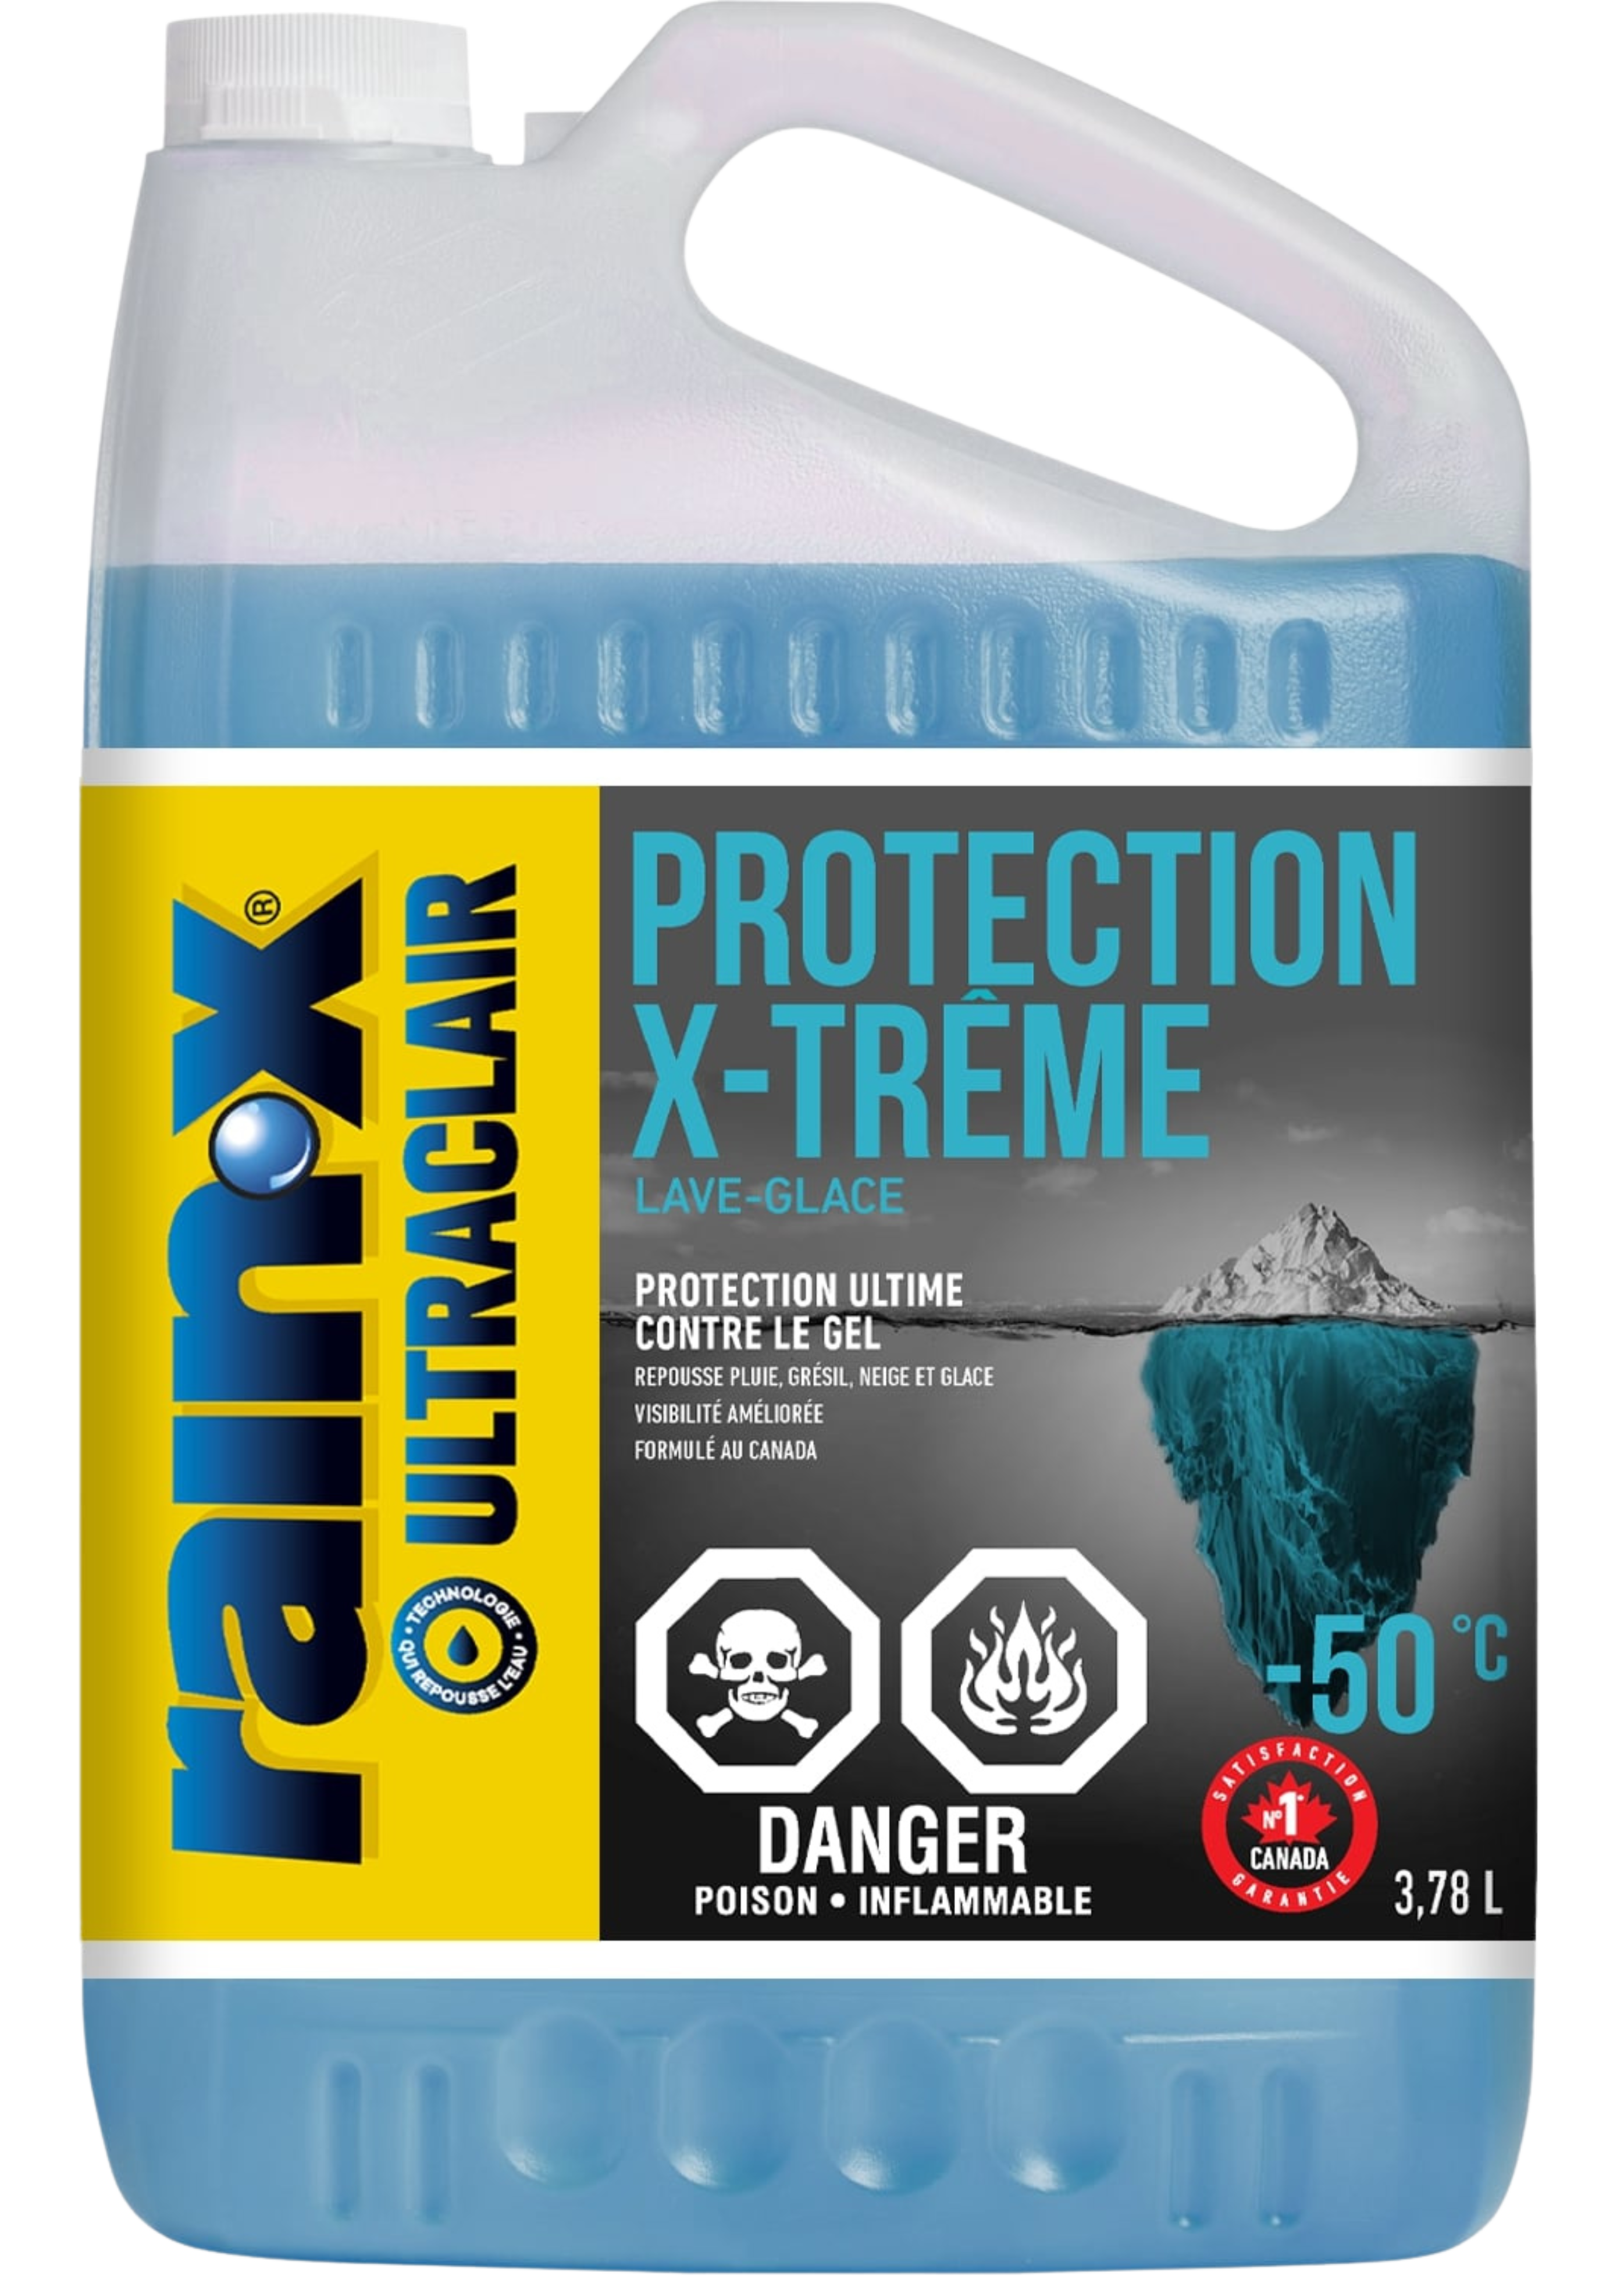 Protection X-Trême by Rain-X for -50 ˚C